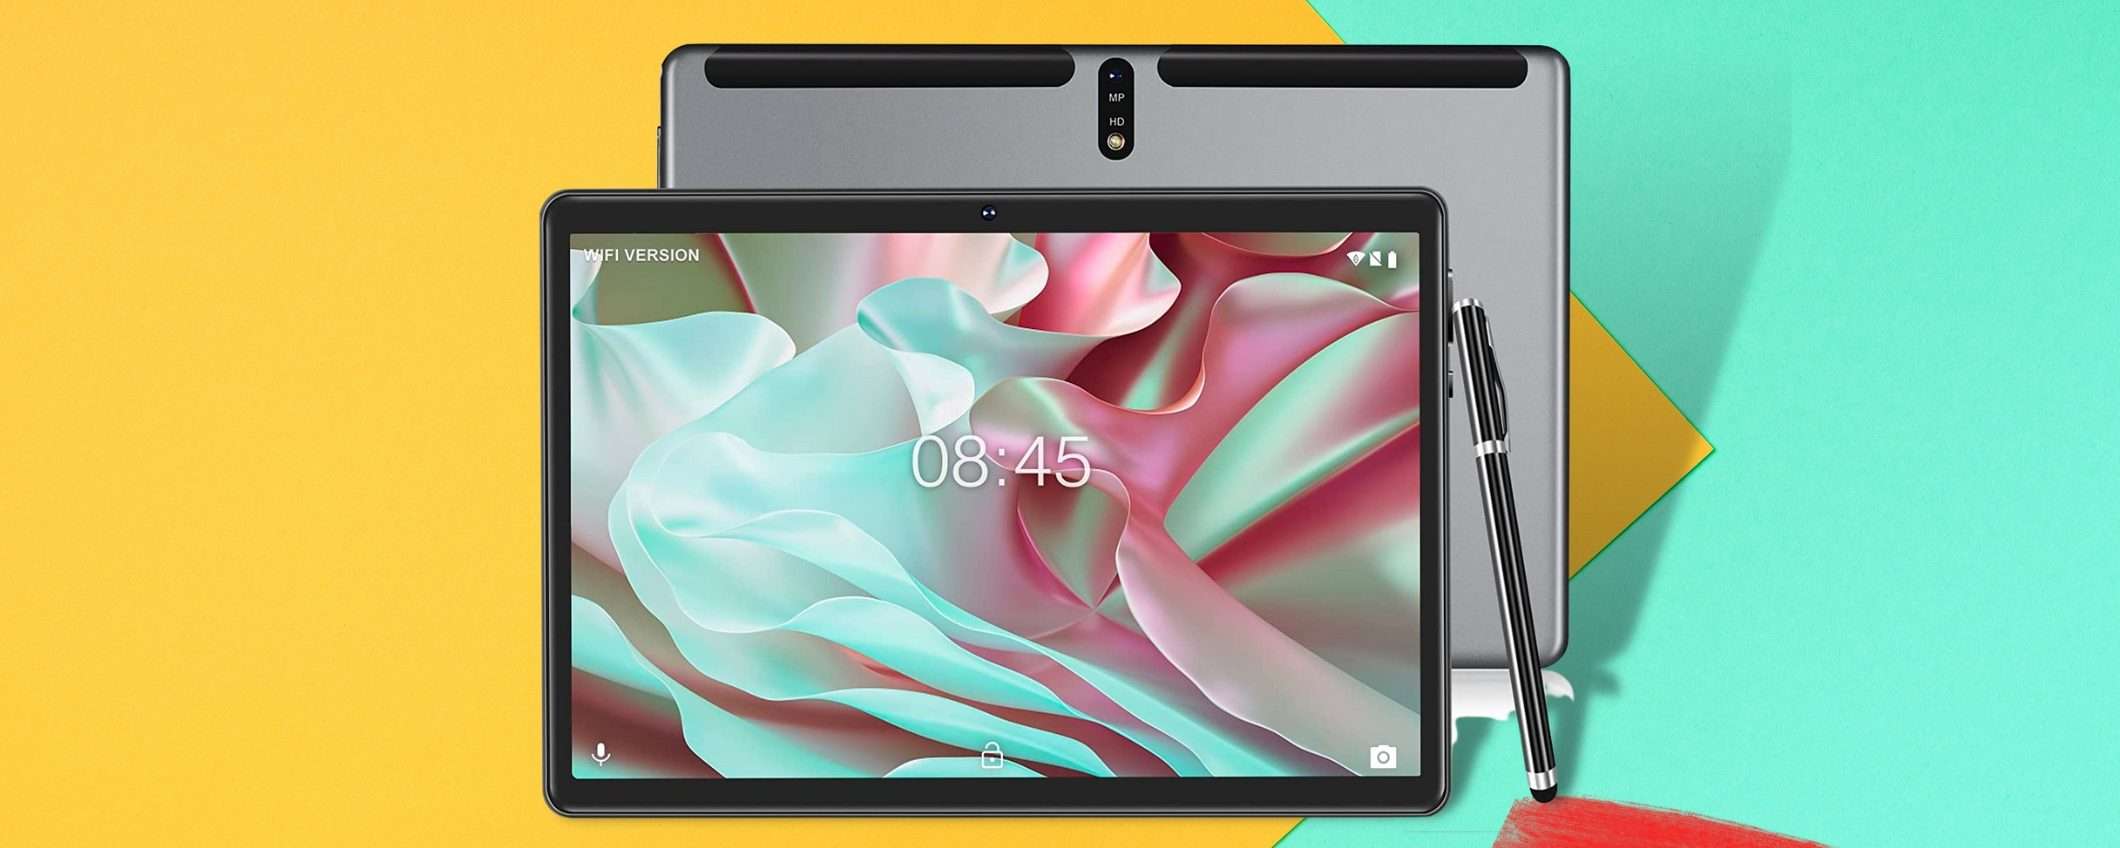 Tablet 10 pollici Android, ti sorprende e costa meno di 90€: FALLO TUO